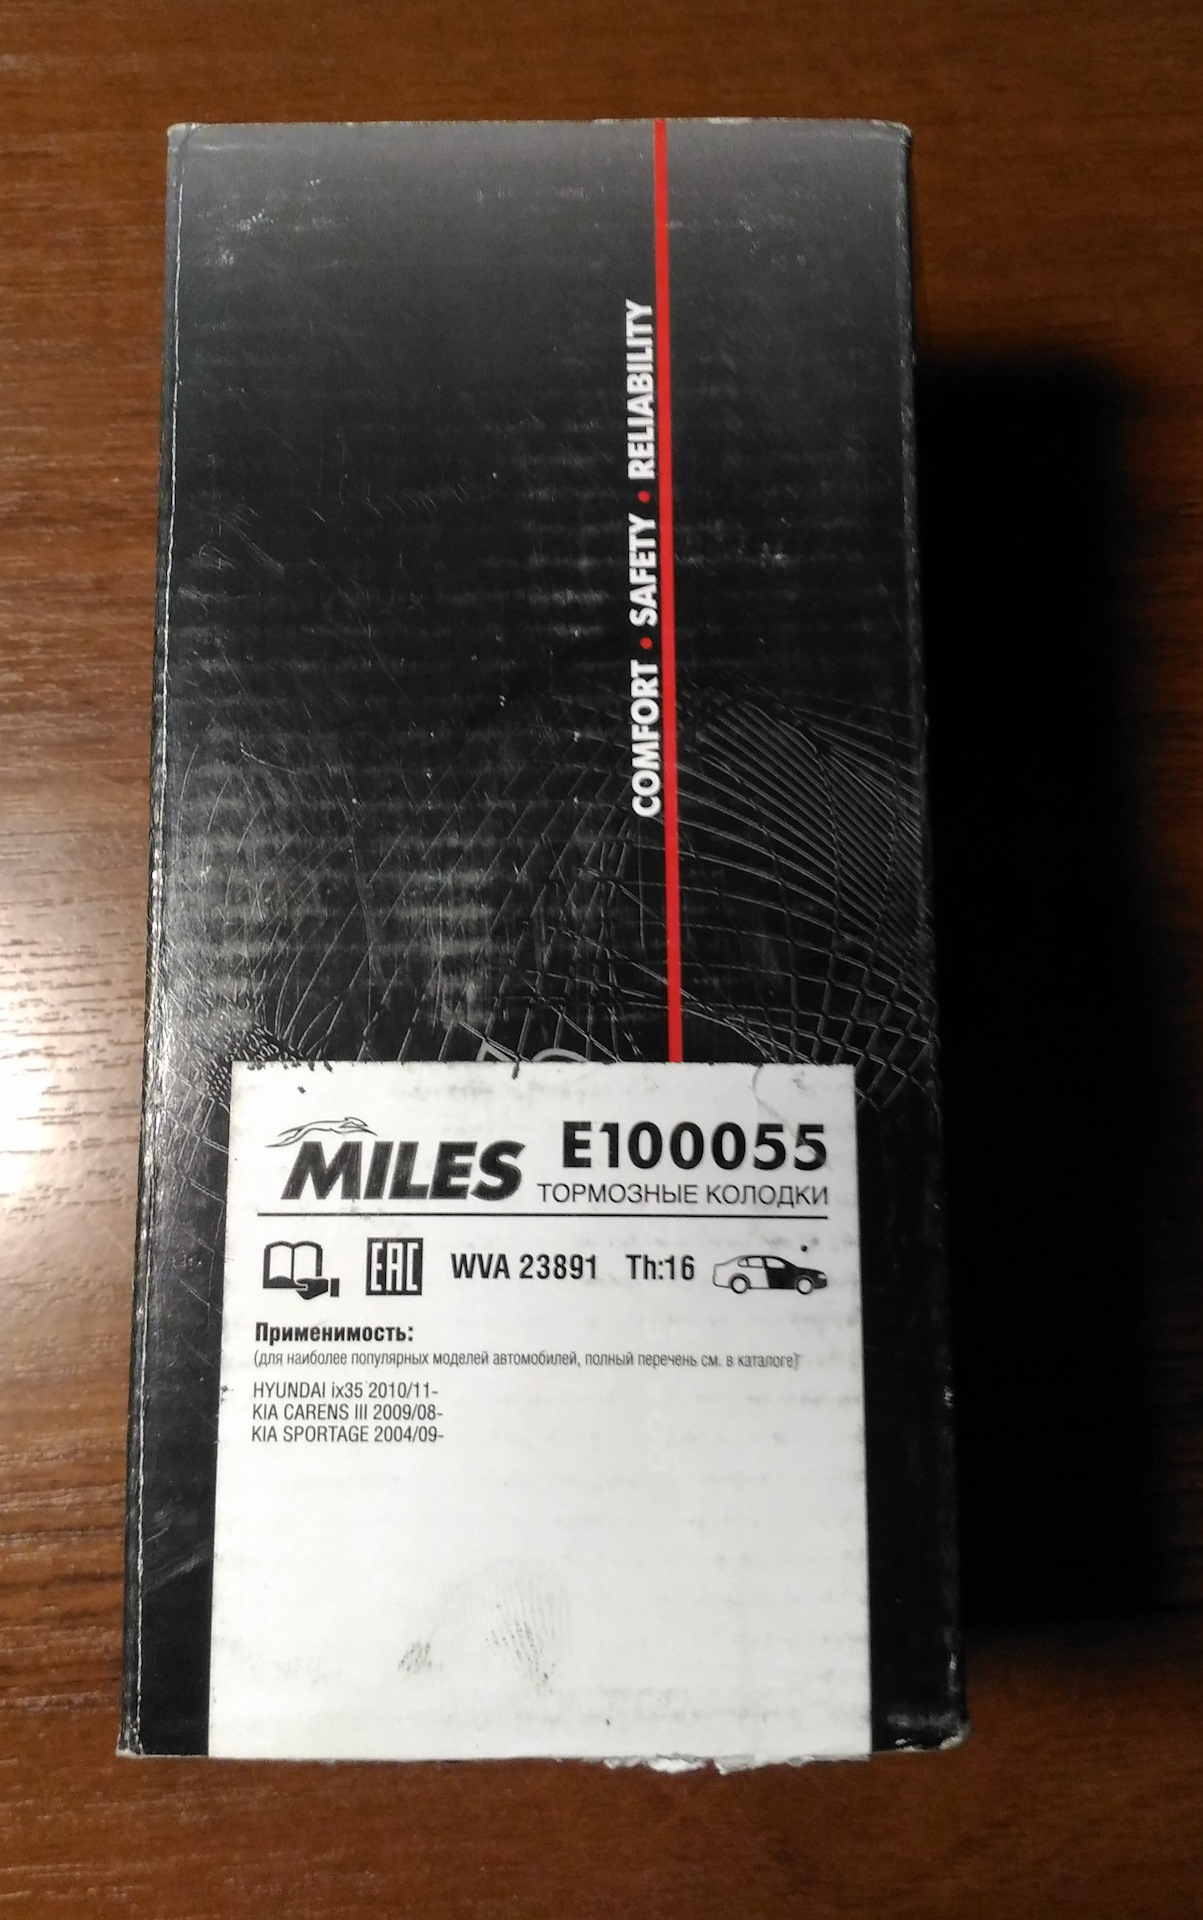 Miles pro. Колодки тормозные Miles e40042. Miles Pro e5 колодки. E100055. E100055 Miles.